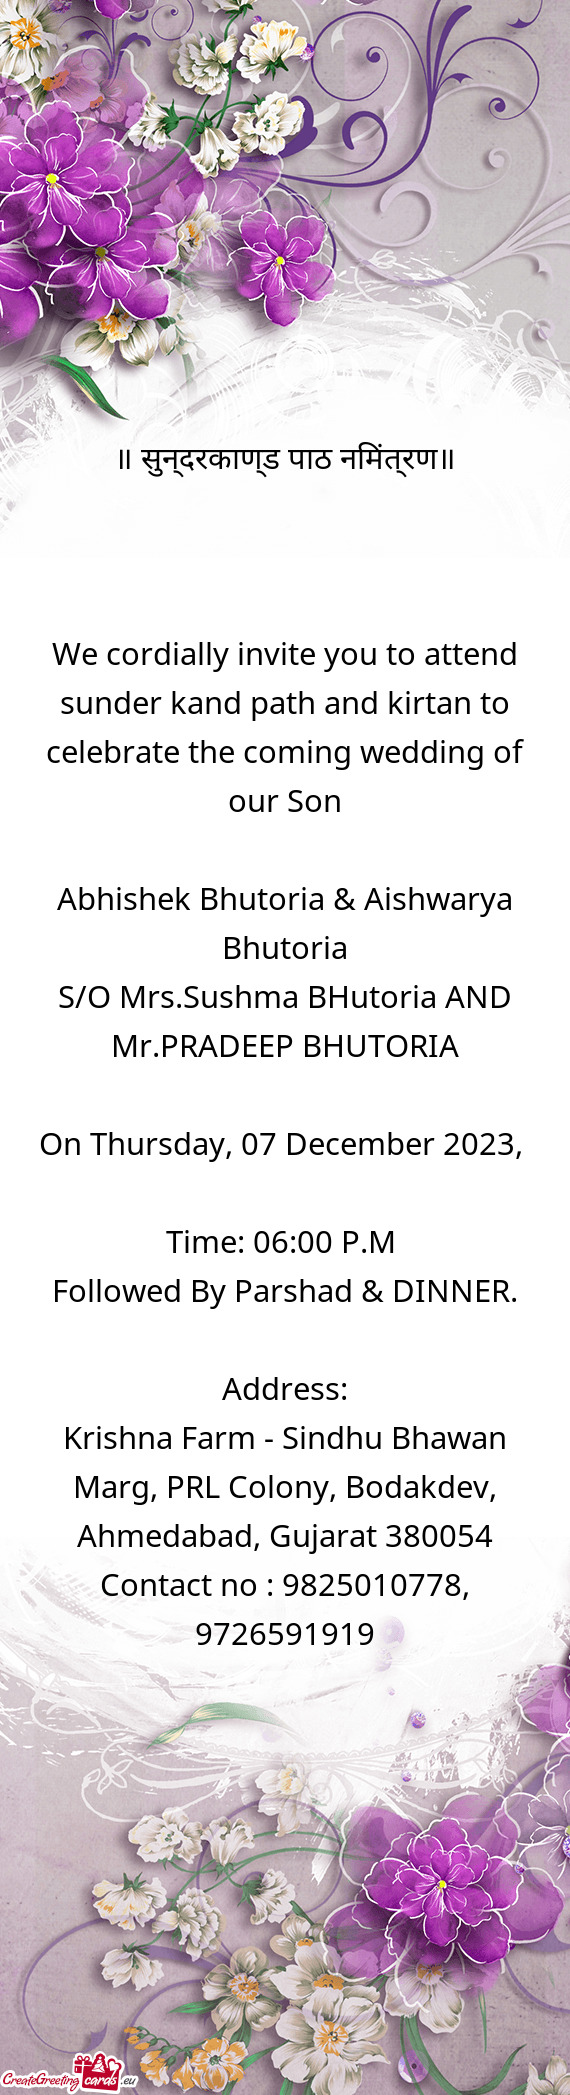 Abhishek Bhutoria & Aishwarya Bhutoria